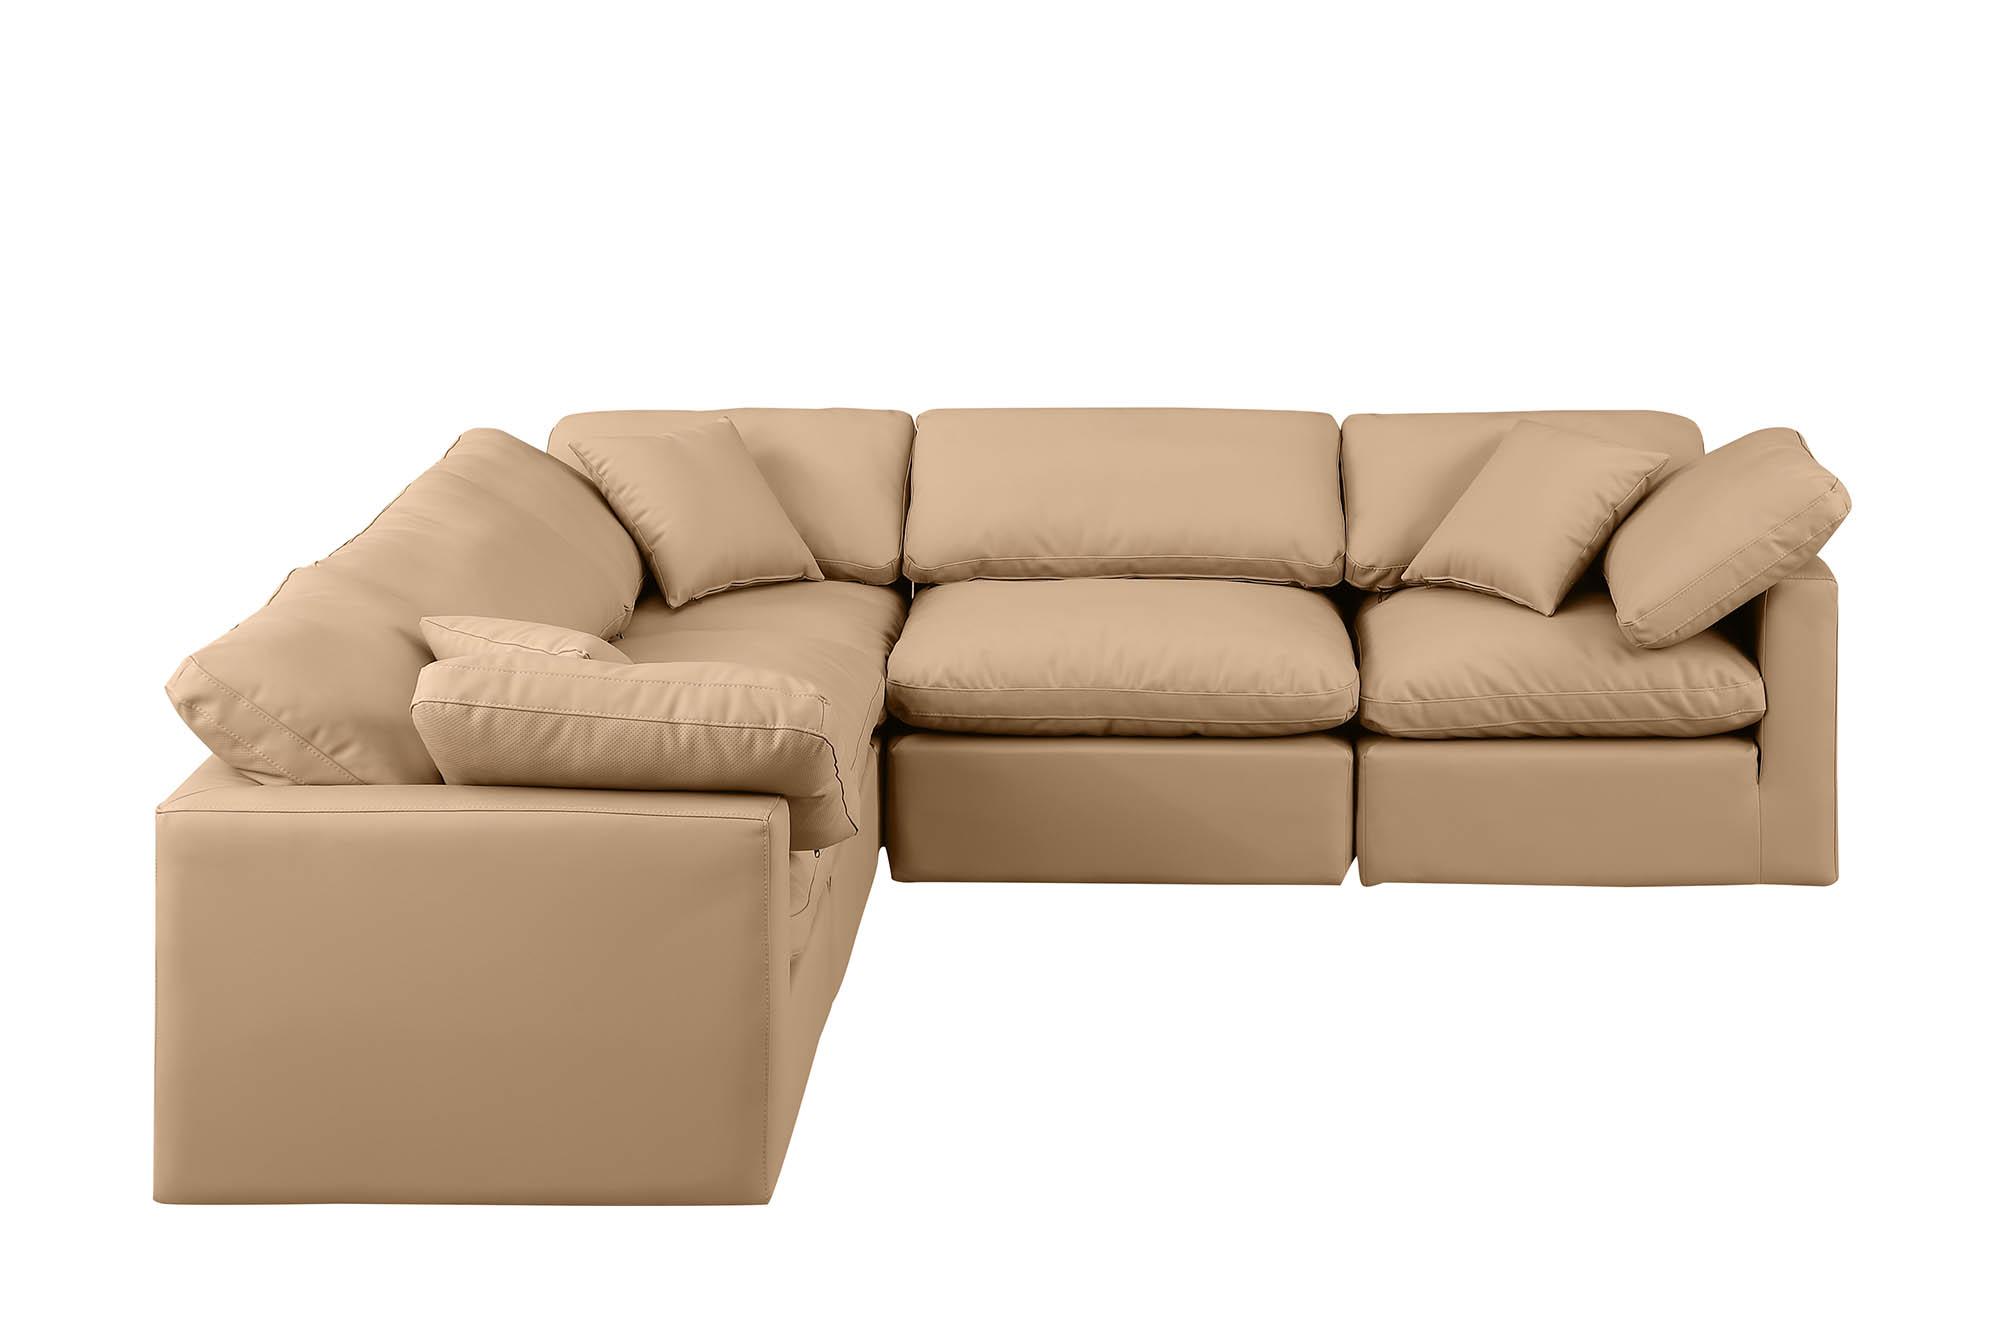 

    
Meridian Furniture INDULGE 146Tan-Sec5C Modular Sectional Sofa Tan 146Tan-Sec5C
